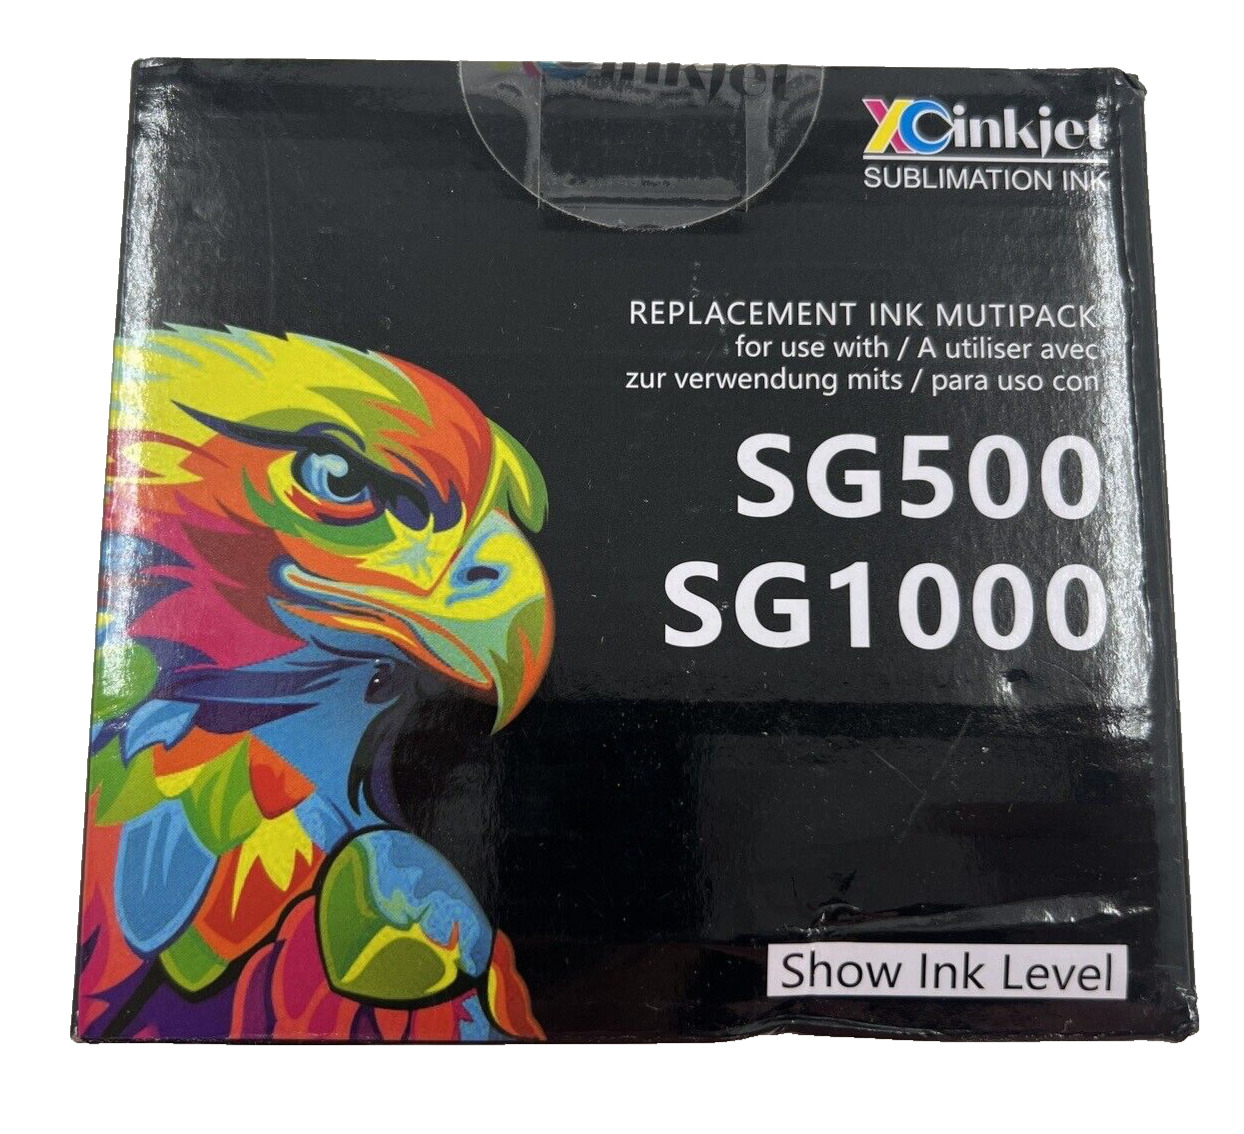 4 pk of Sublimation Ink - XCinkjet Compatible for Sawgrass SG500 SG1000 - CMYK